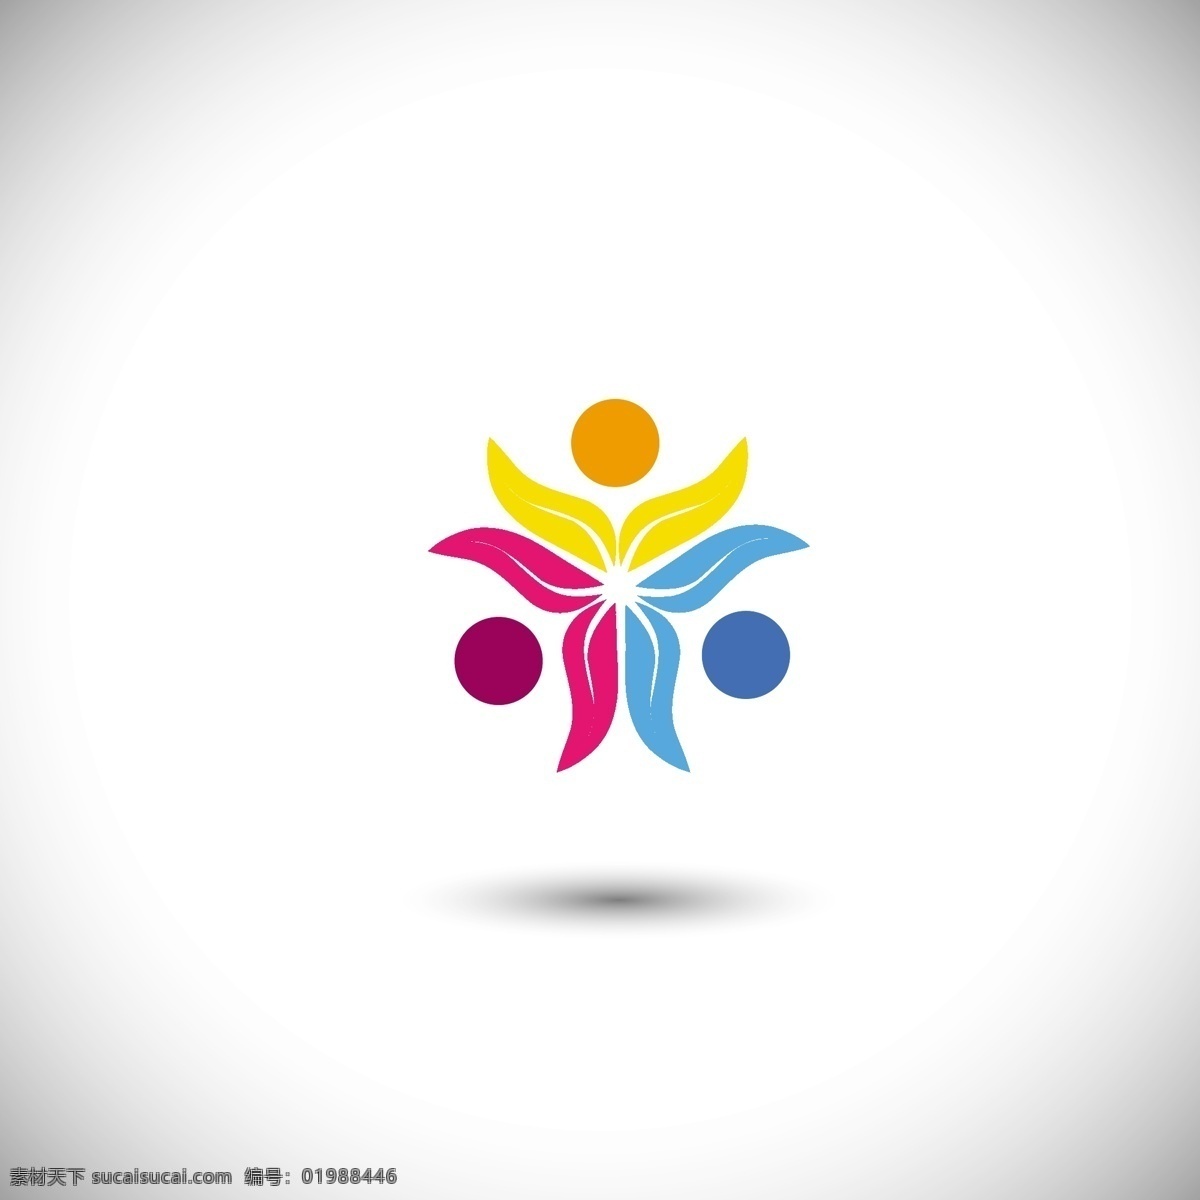 五颜六色 花 形状 标志 花卉 自然 叶 多姿多彩 公司 环境 身份 蓬勃发展 标识 花卉图案 公司logo 自然标志 花图案 彩色 孤立的环境 白色